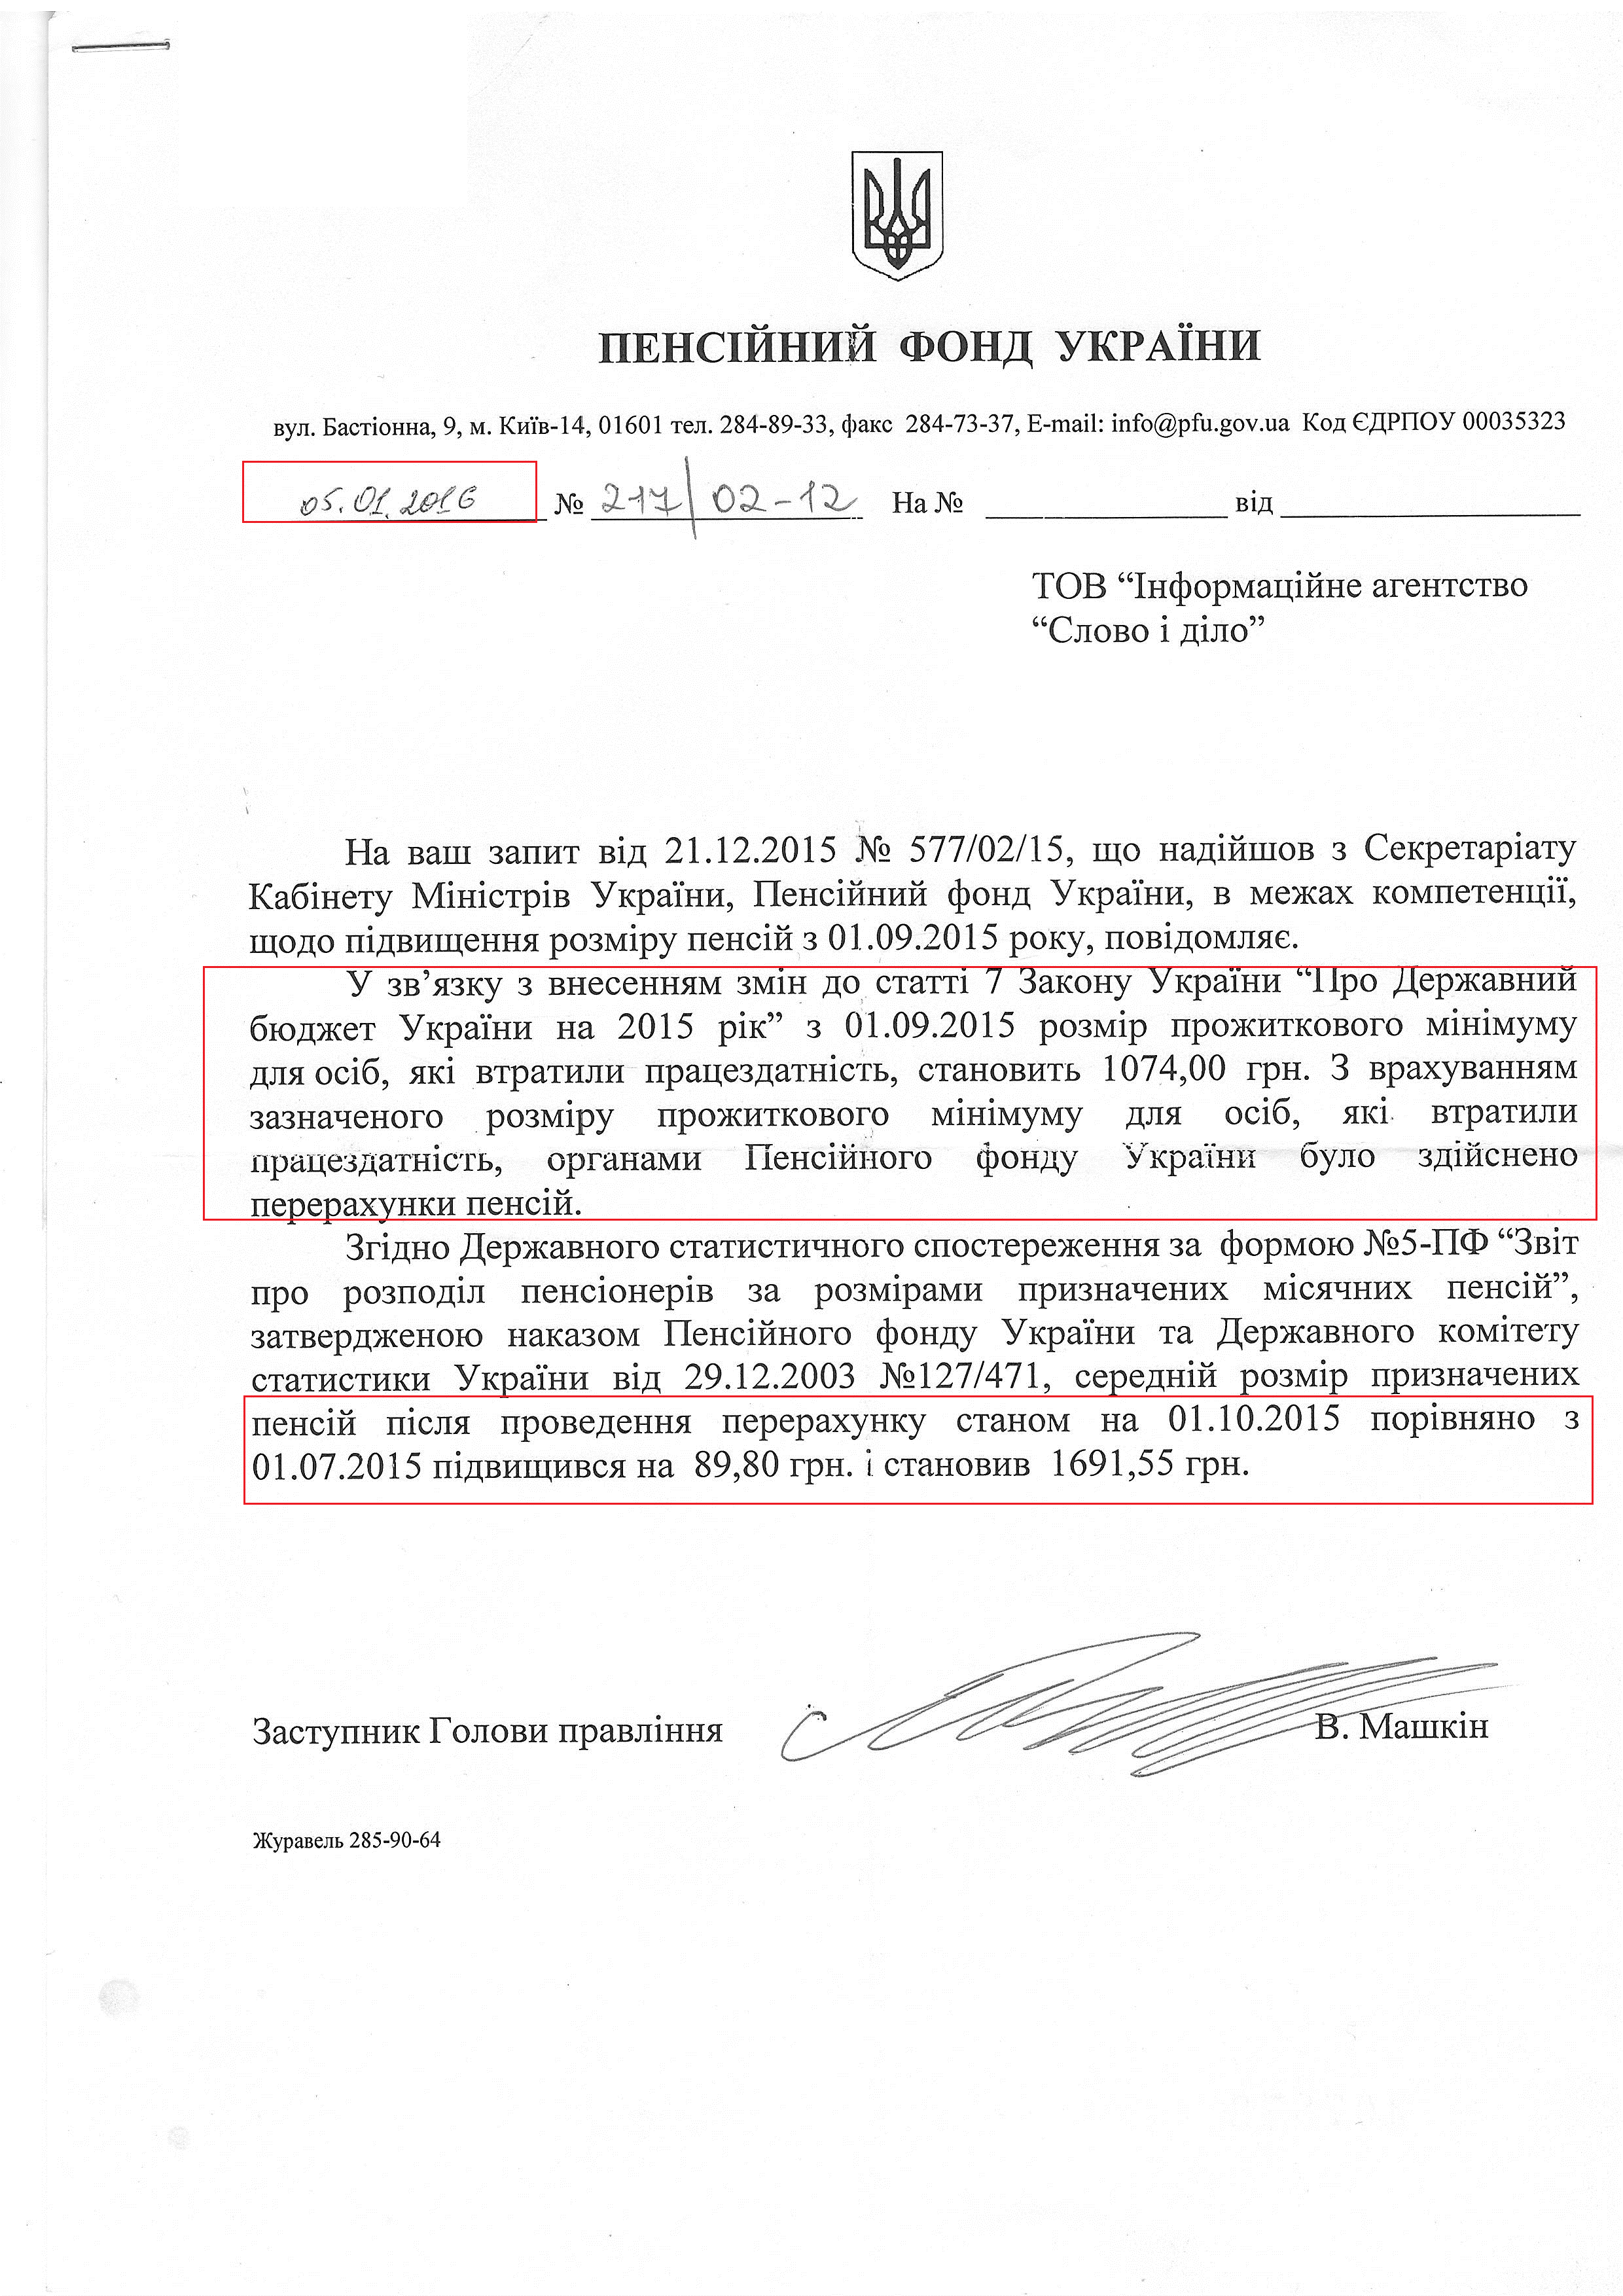 Лист Пенсійного фонду України від 5 січня 2016 року